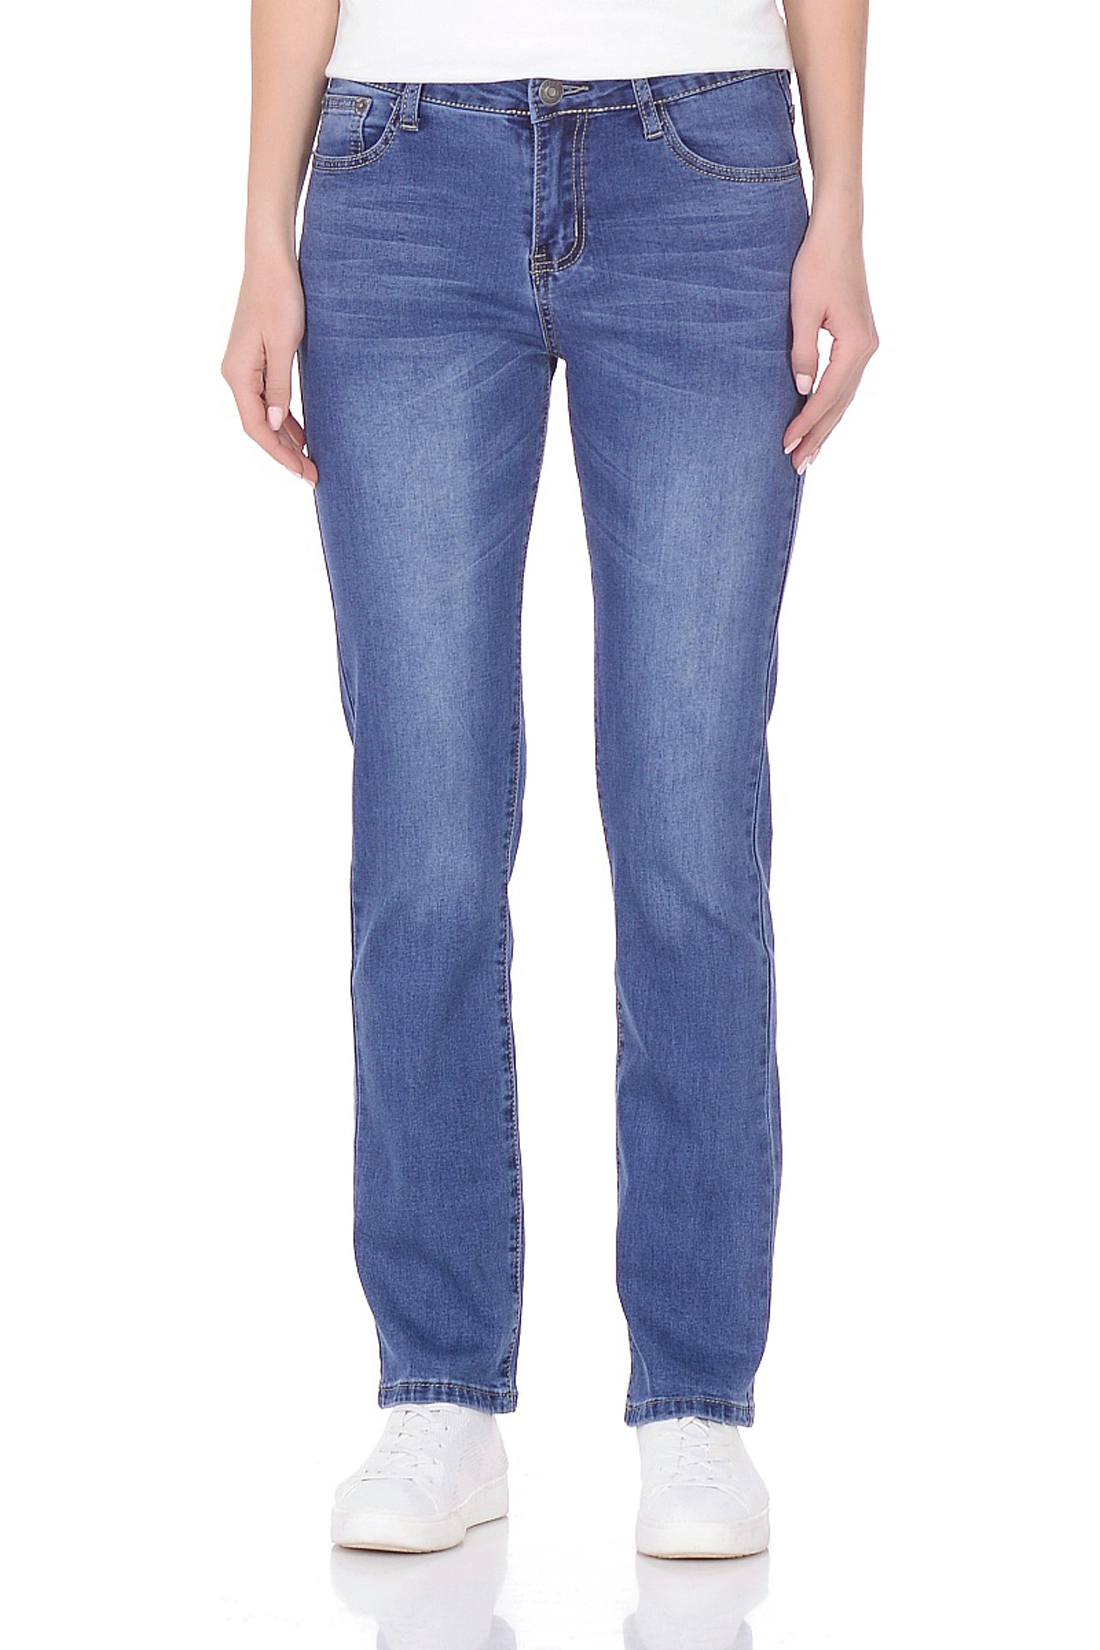 Прямые джинсы (арт. baon B308014), размер 30, цвет blue denim#голубой Прямые джинсы (арт. baon B308014) - фото 1